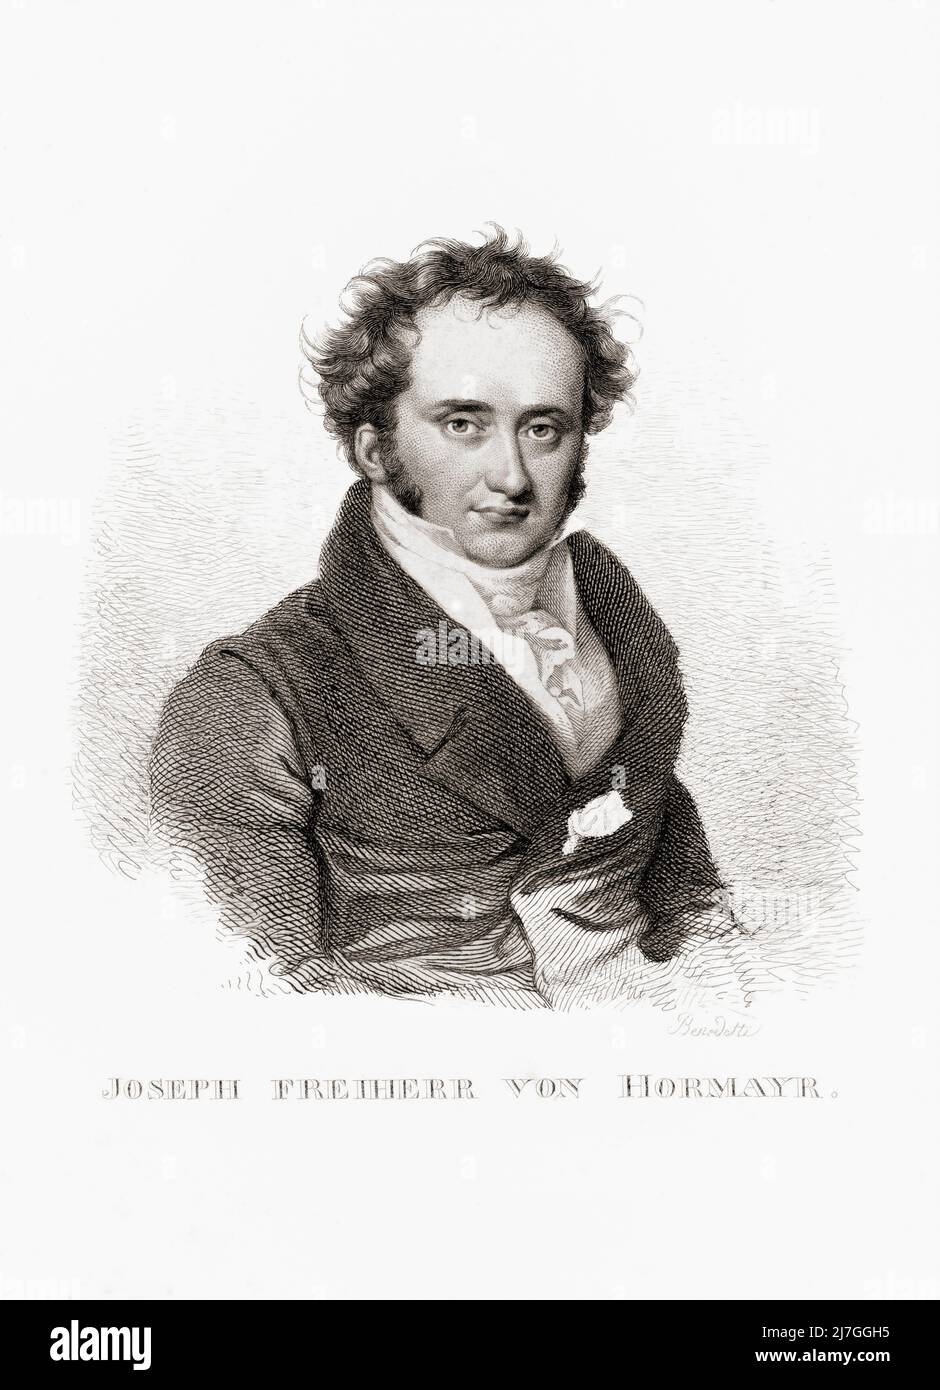 Joseph Hormayr, Baron zu Hortenburg, oder Joseph Freiherr von Hormayr zu Hortenburg, 1781 - 1782. Österreichischer und deutscher Historiker und Staatsmann. Stockfoto